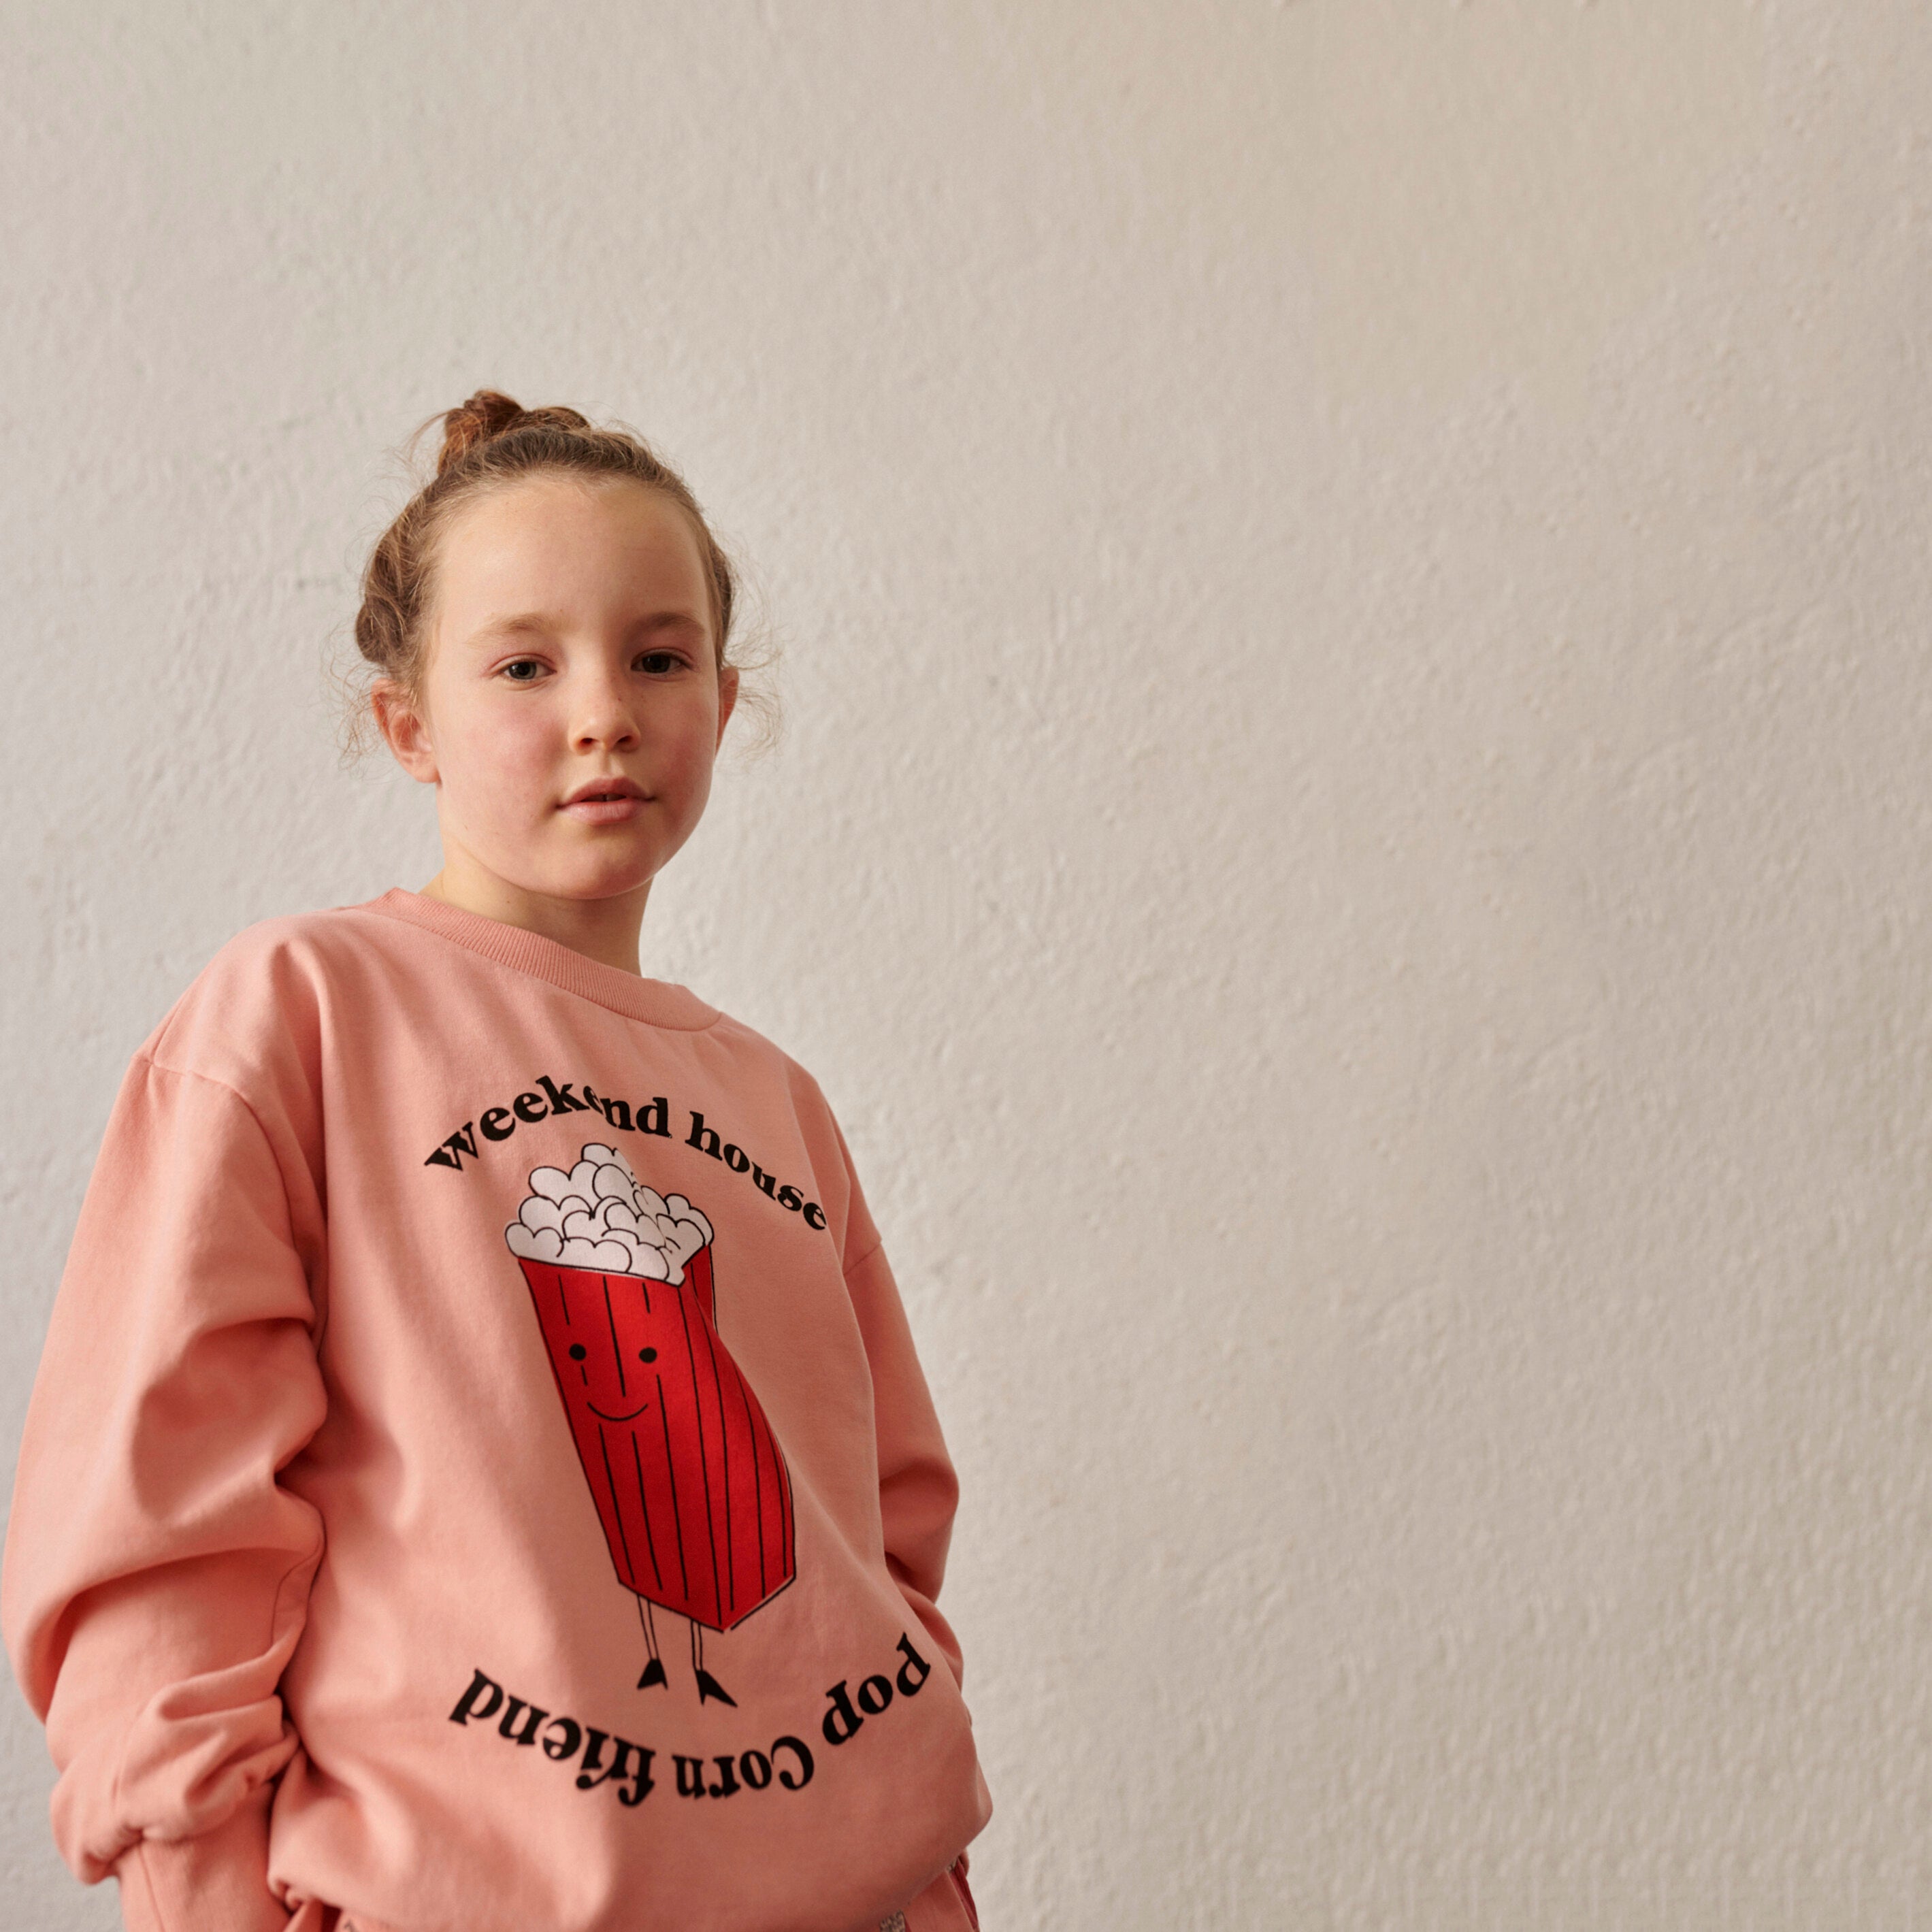 Boys & Girls Pink Printed Cotton Sweatshirt